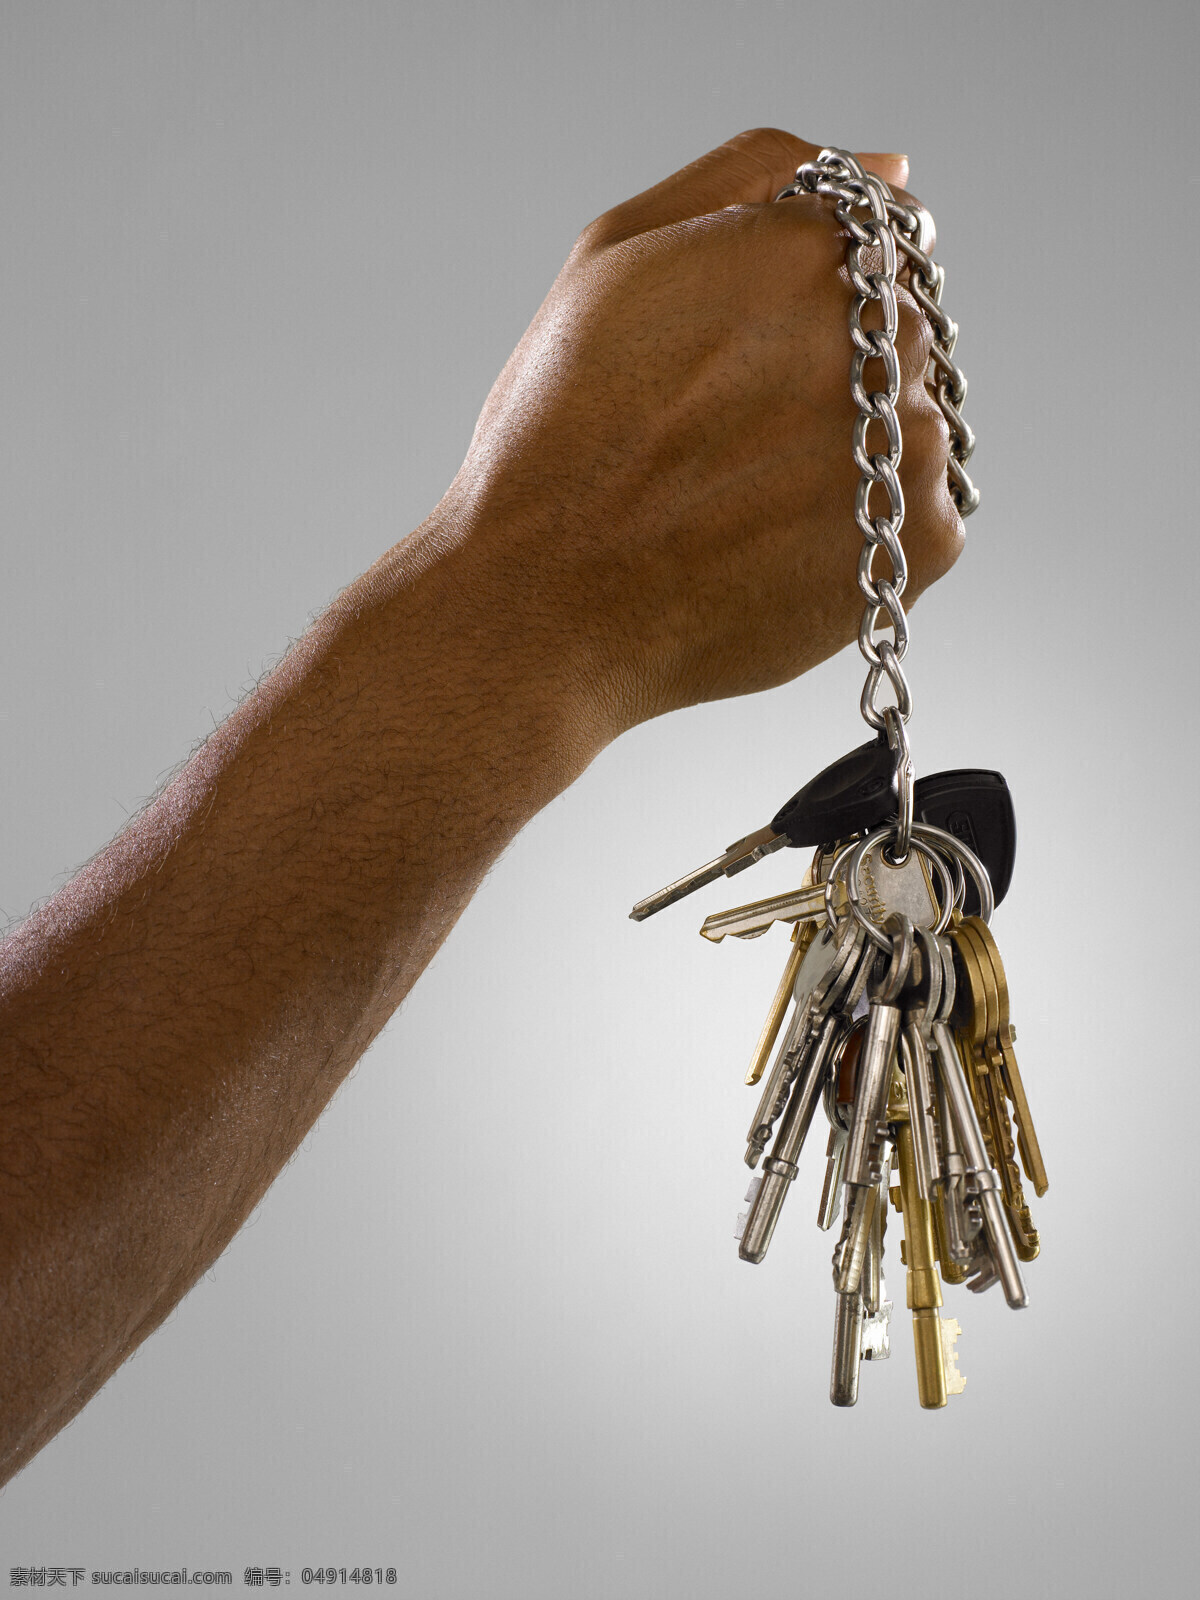 手 钥匙 手势 握住 钥匙串 人体器官图 人物图片